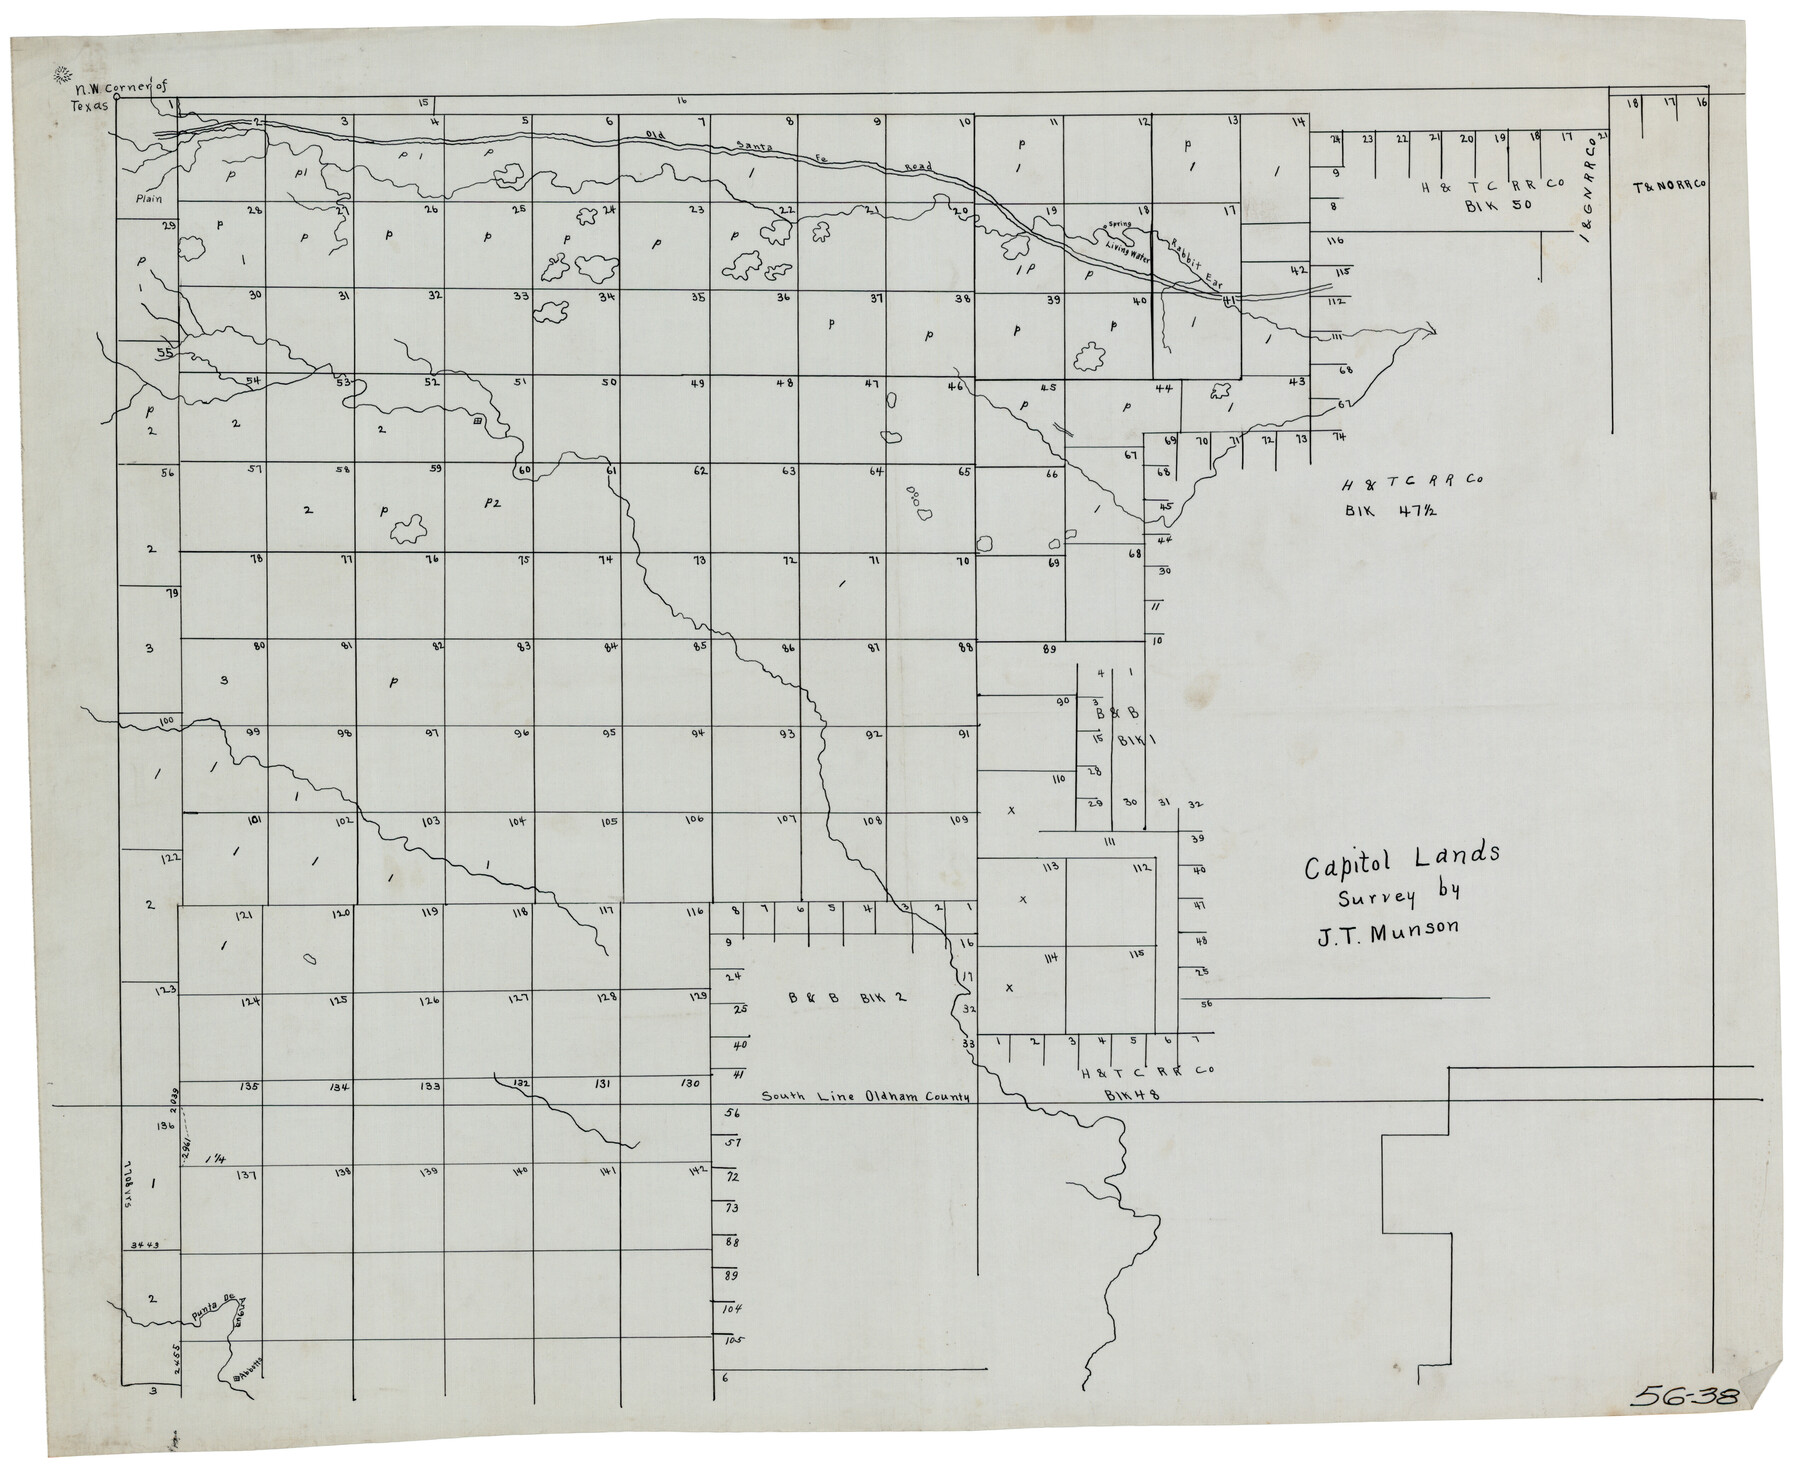 90575, Capitol Lands survey by J. T. Munson, Twichell Survey Records